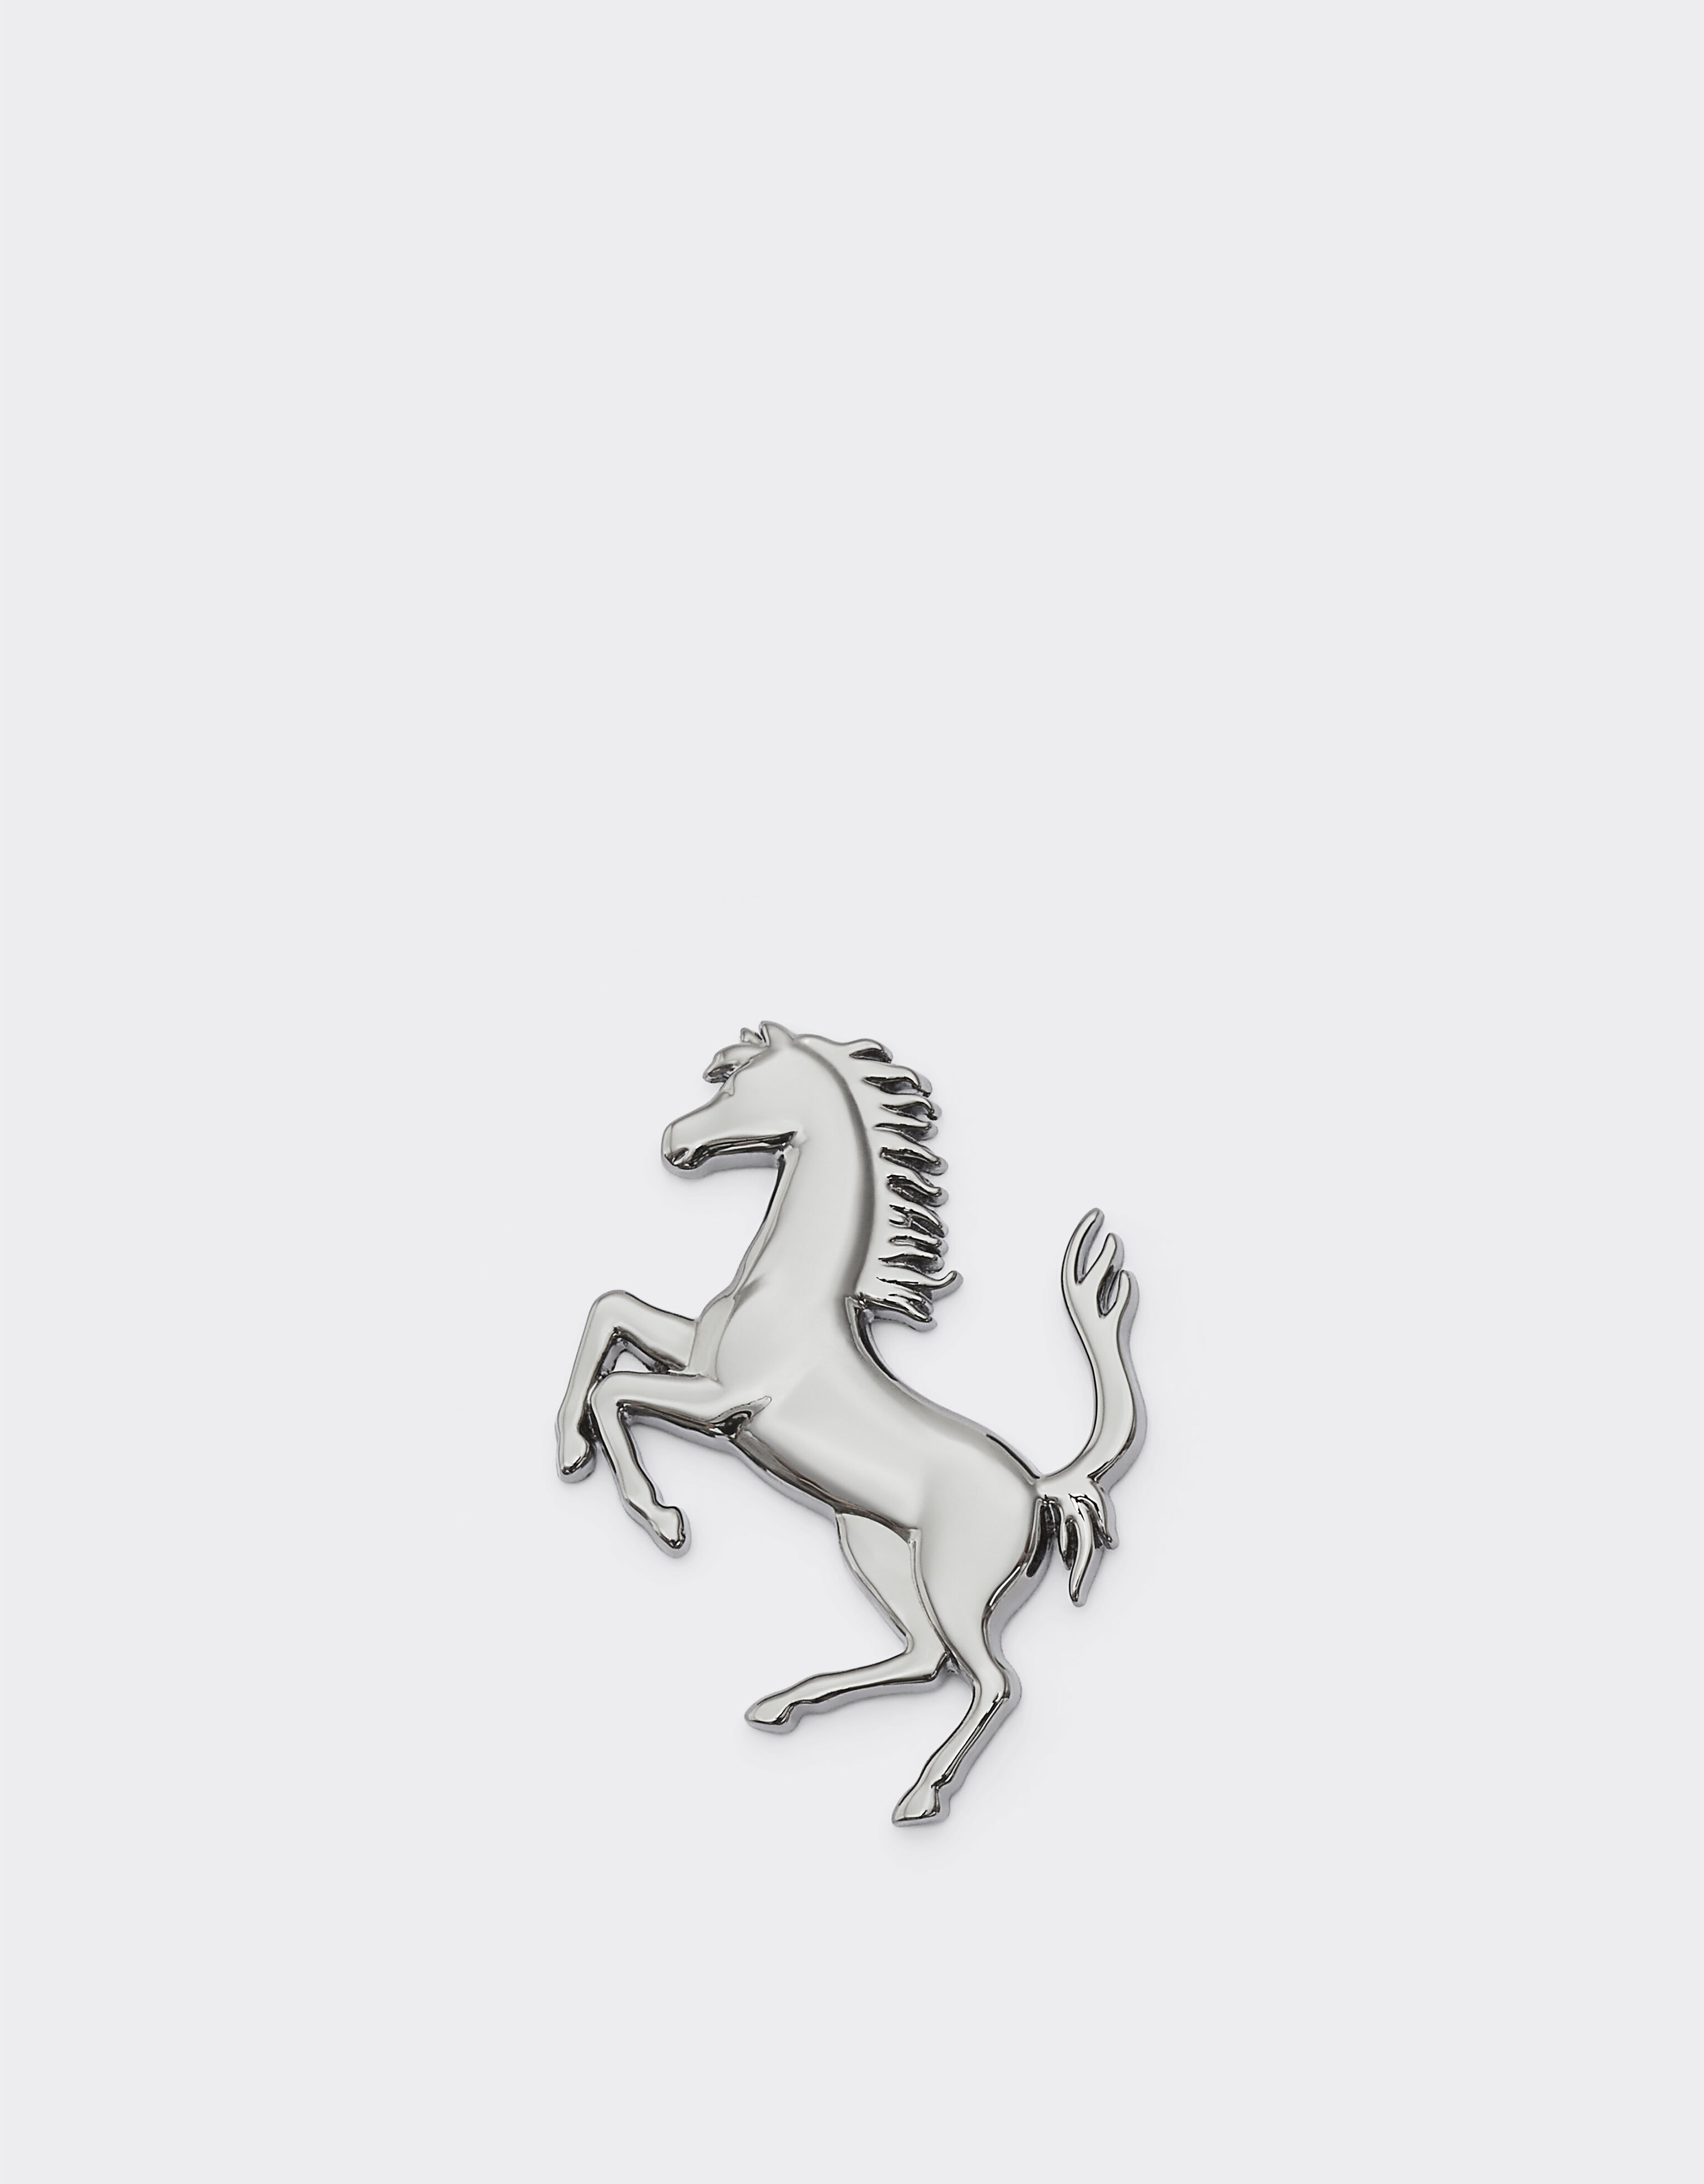 Ferrari Prancing Horse brooch Navy 20815f